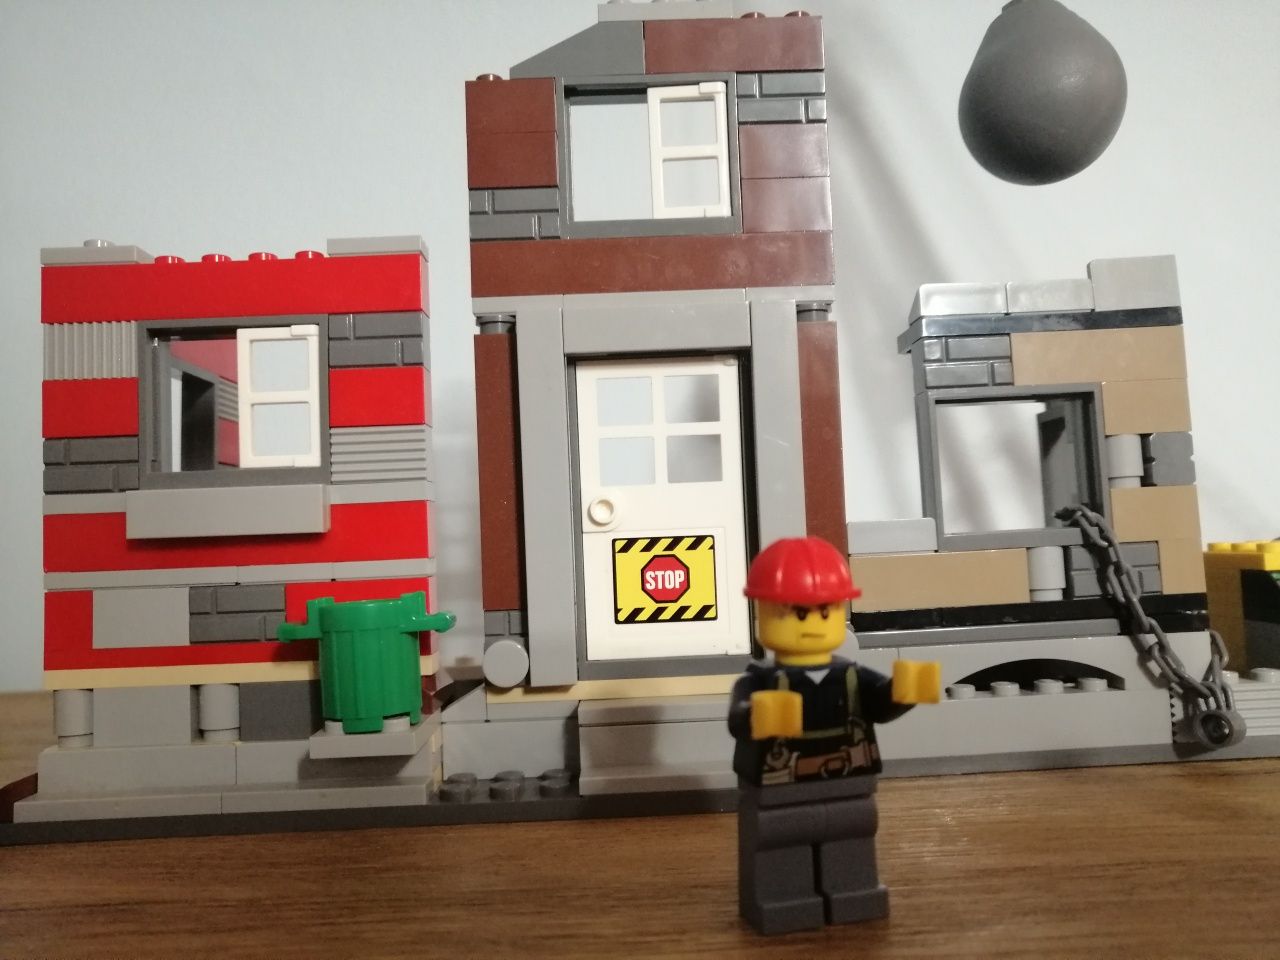 Klocki Lego City 60076 wielka rozbiórka dźwig budynek do rozbiórki